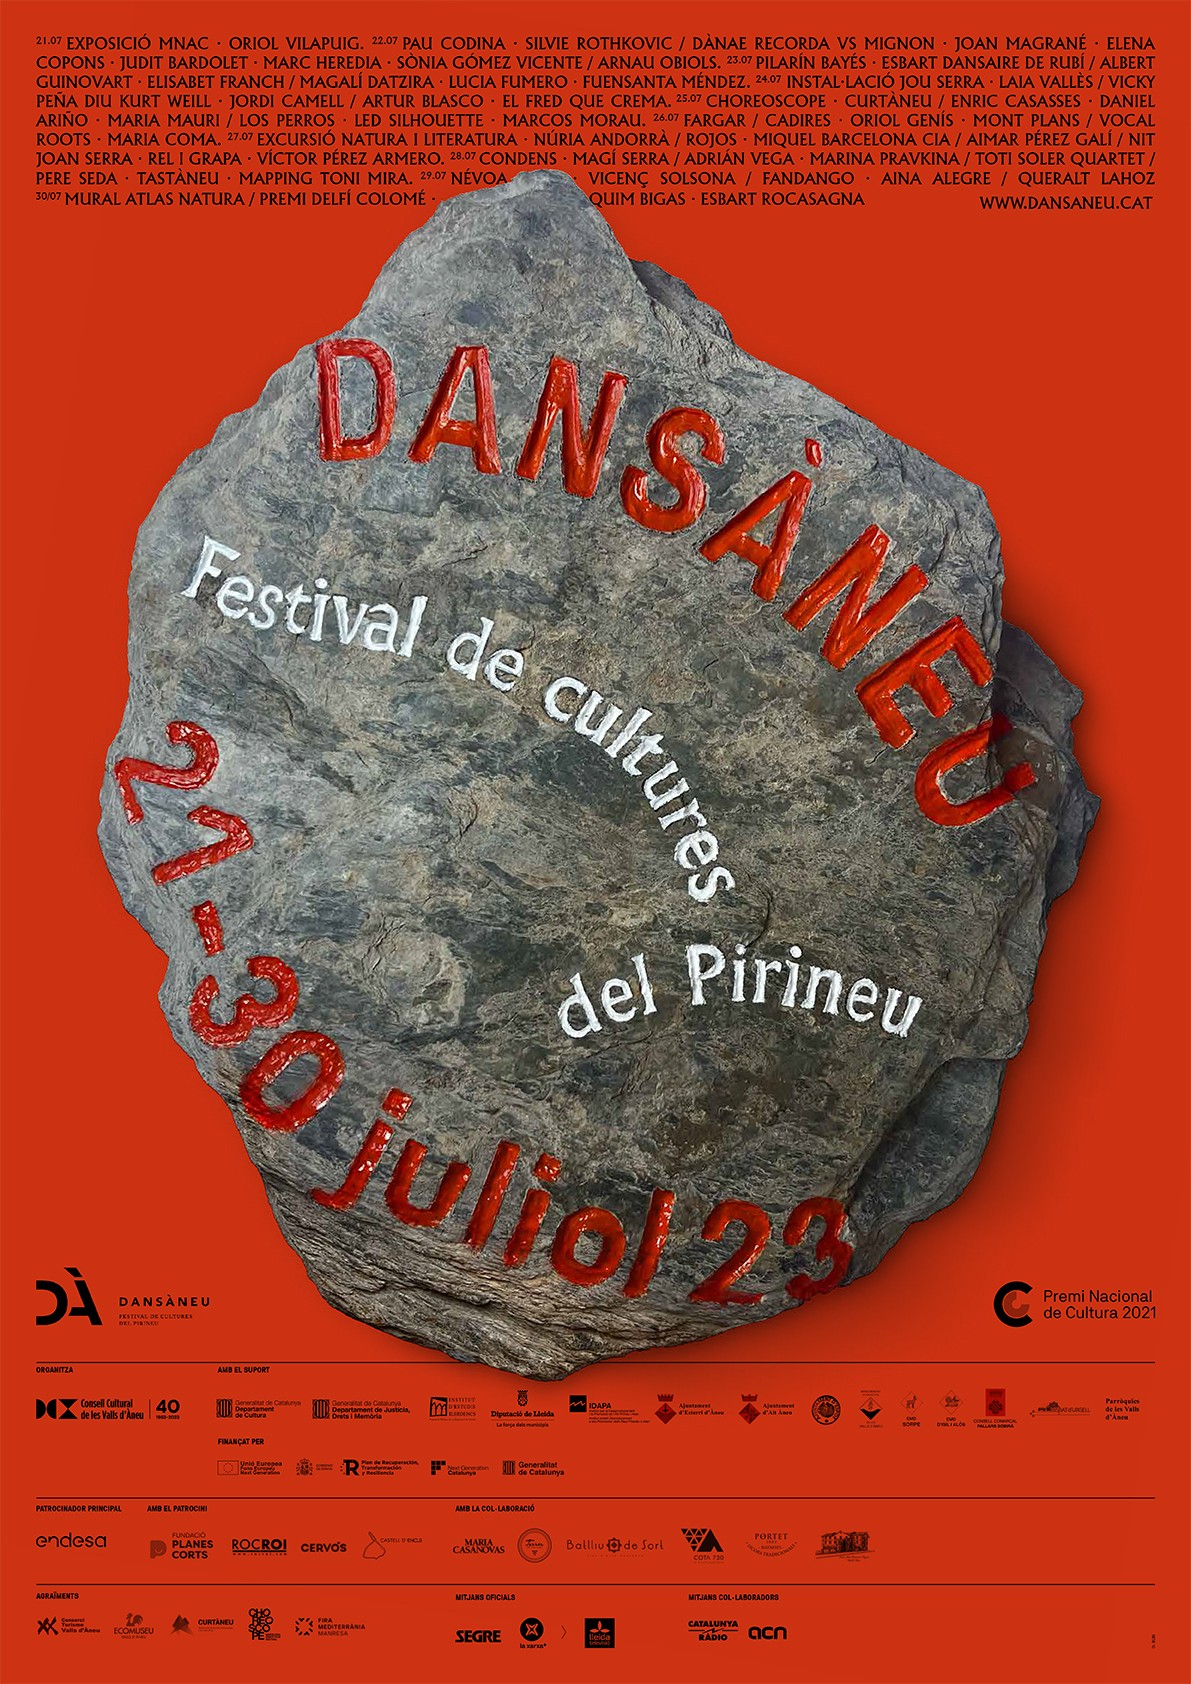 Dansàneu, Festival de Cultures del Pirineu